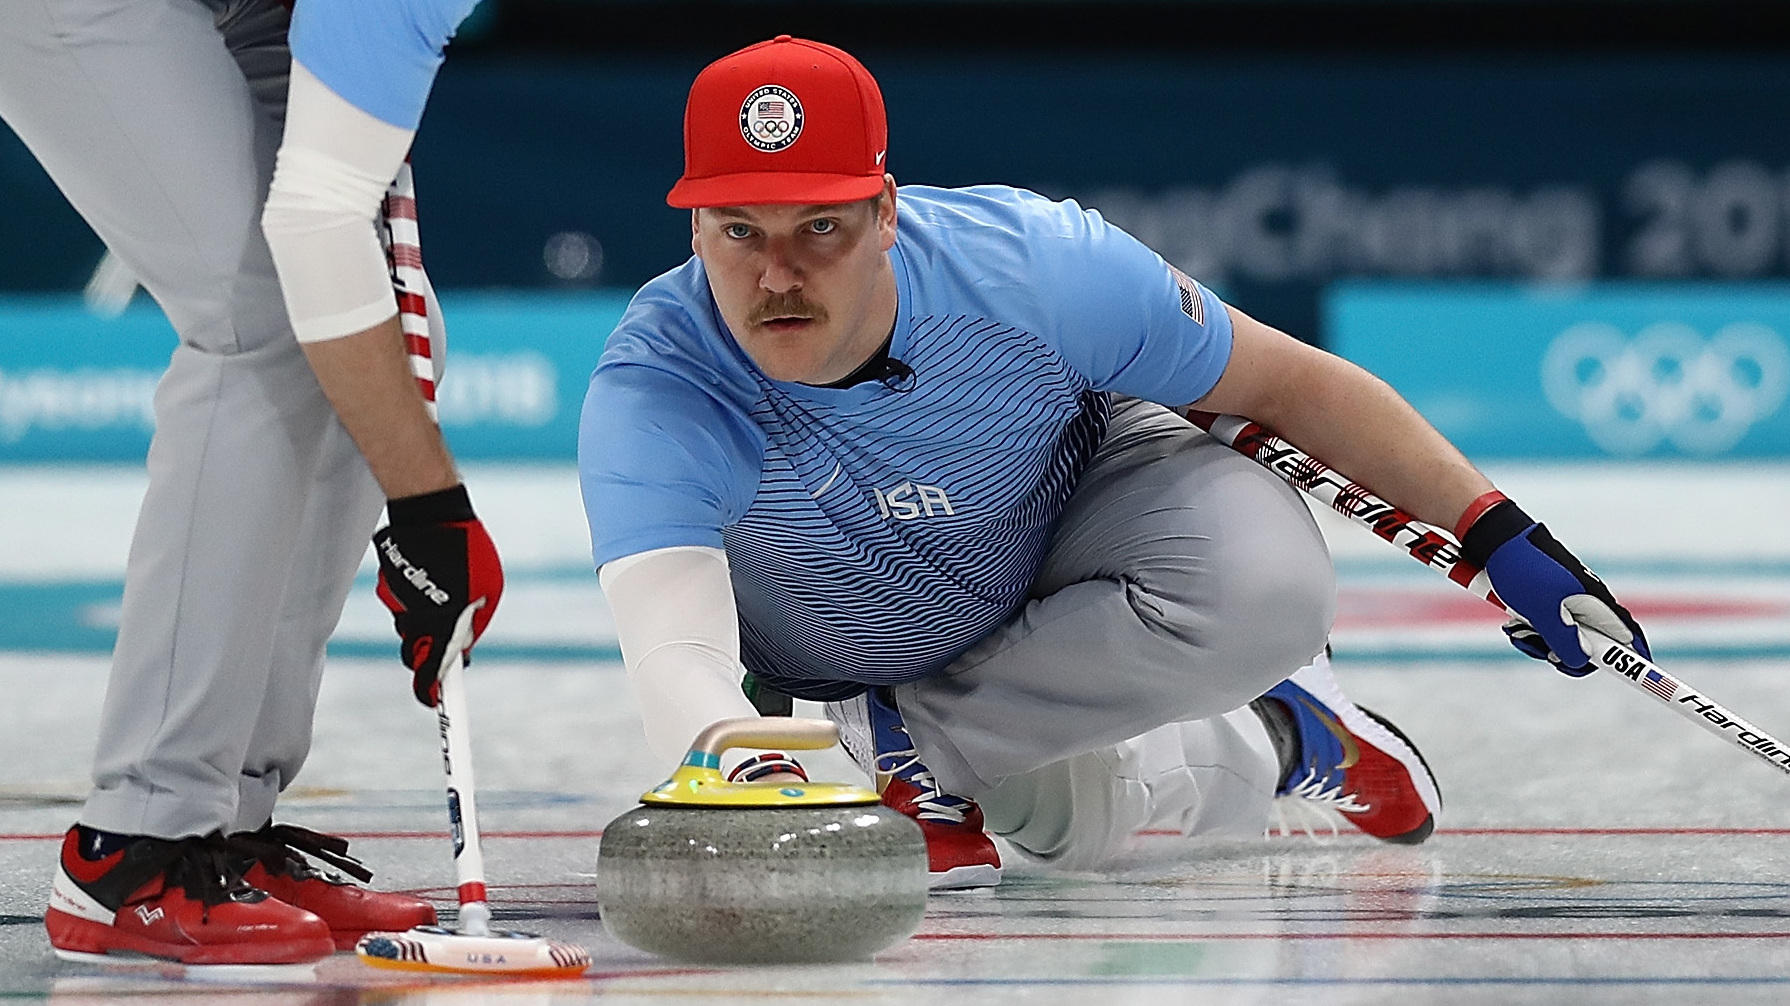 U.S. Men's Curling Leads Sweden 3-2 In Gold Medal Final [LIVE UPDATES